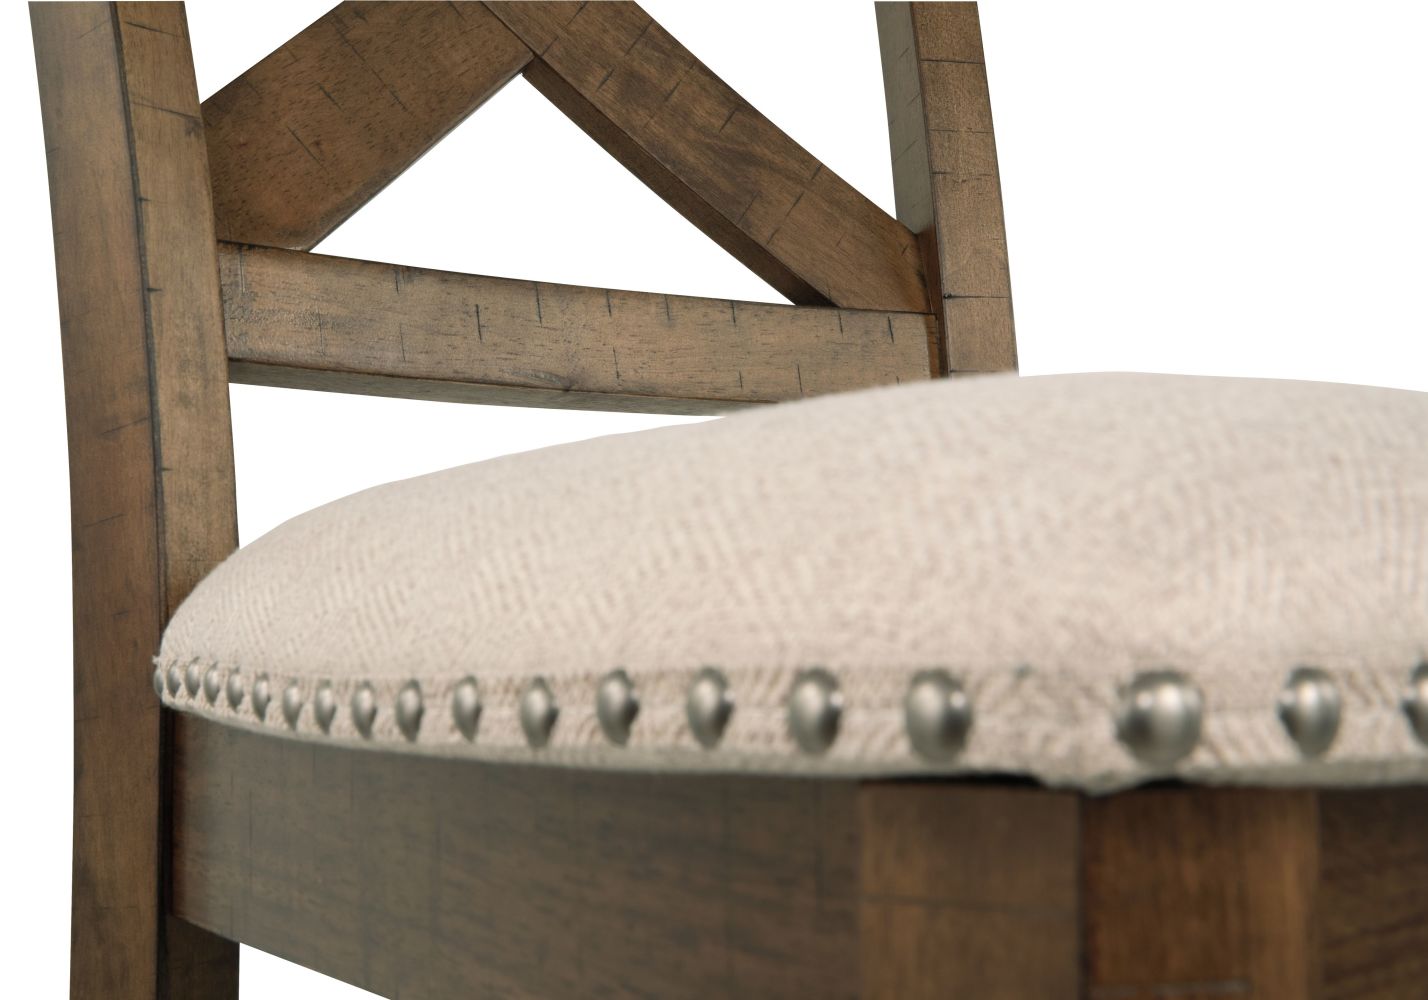 Moriville – Beige – Upholstered Barstool (Set of 2) D631-124